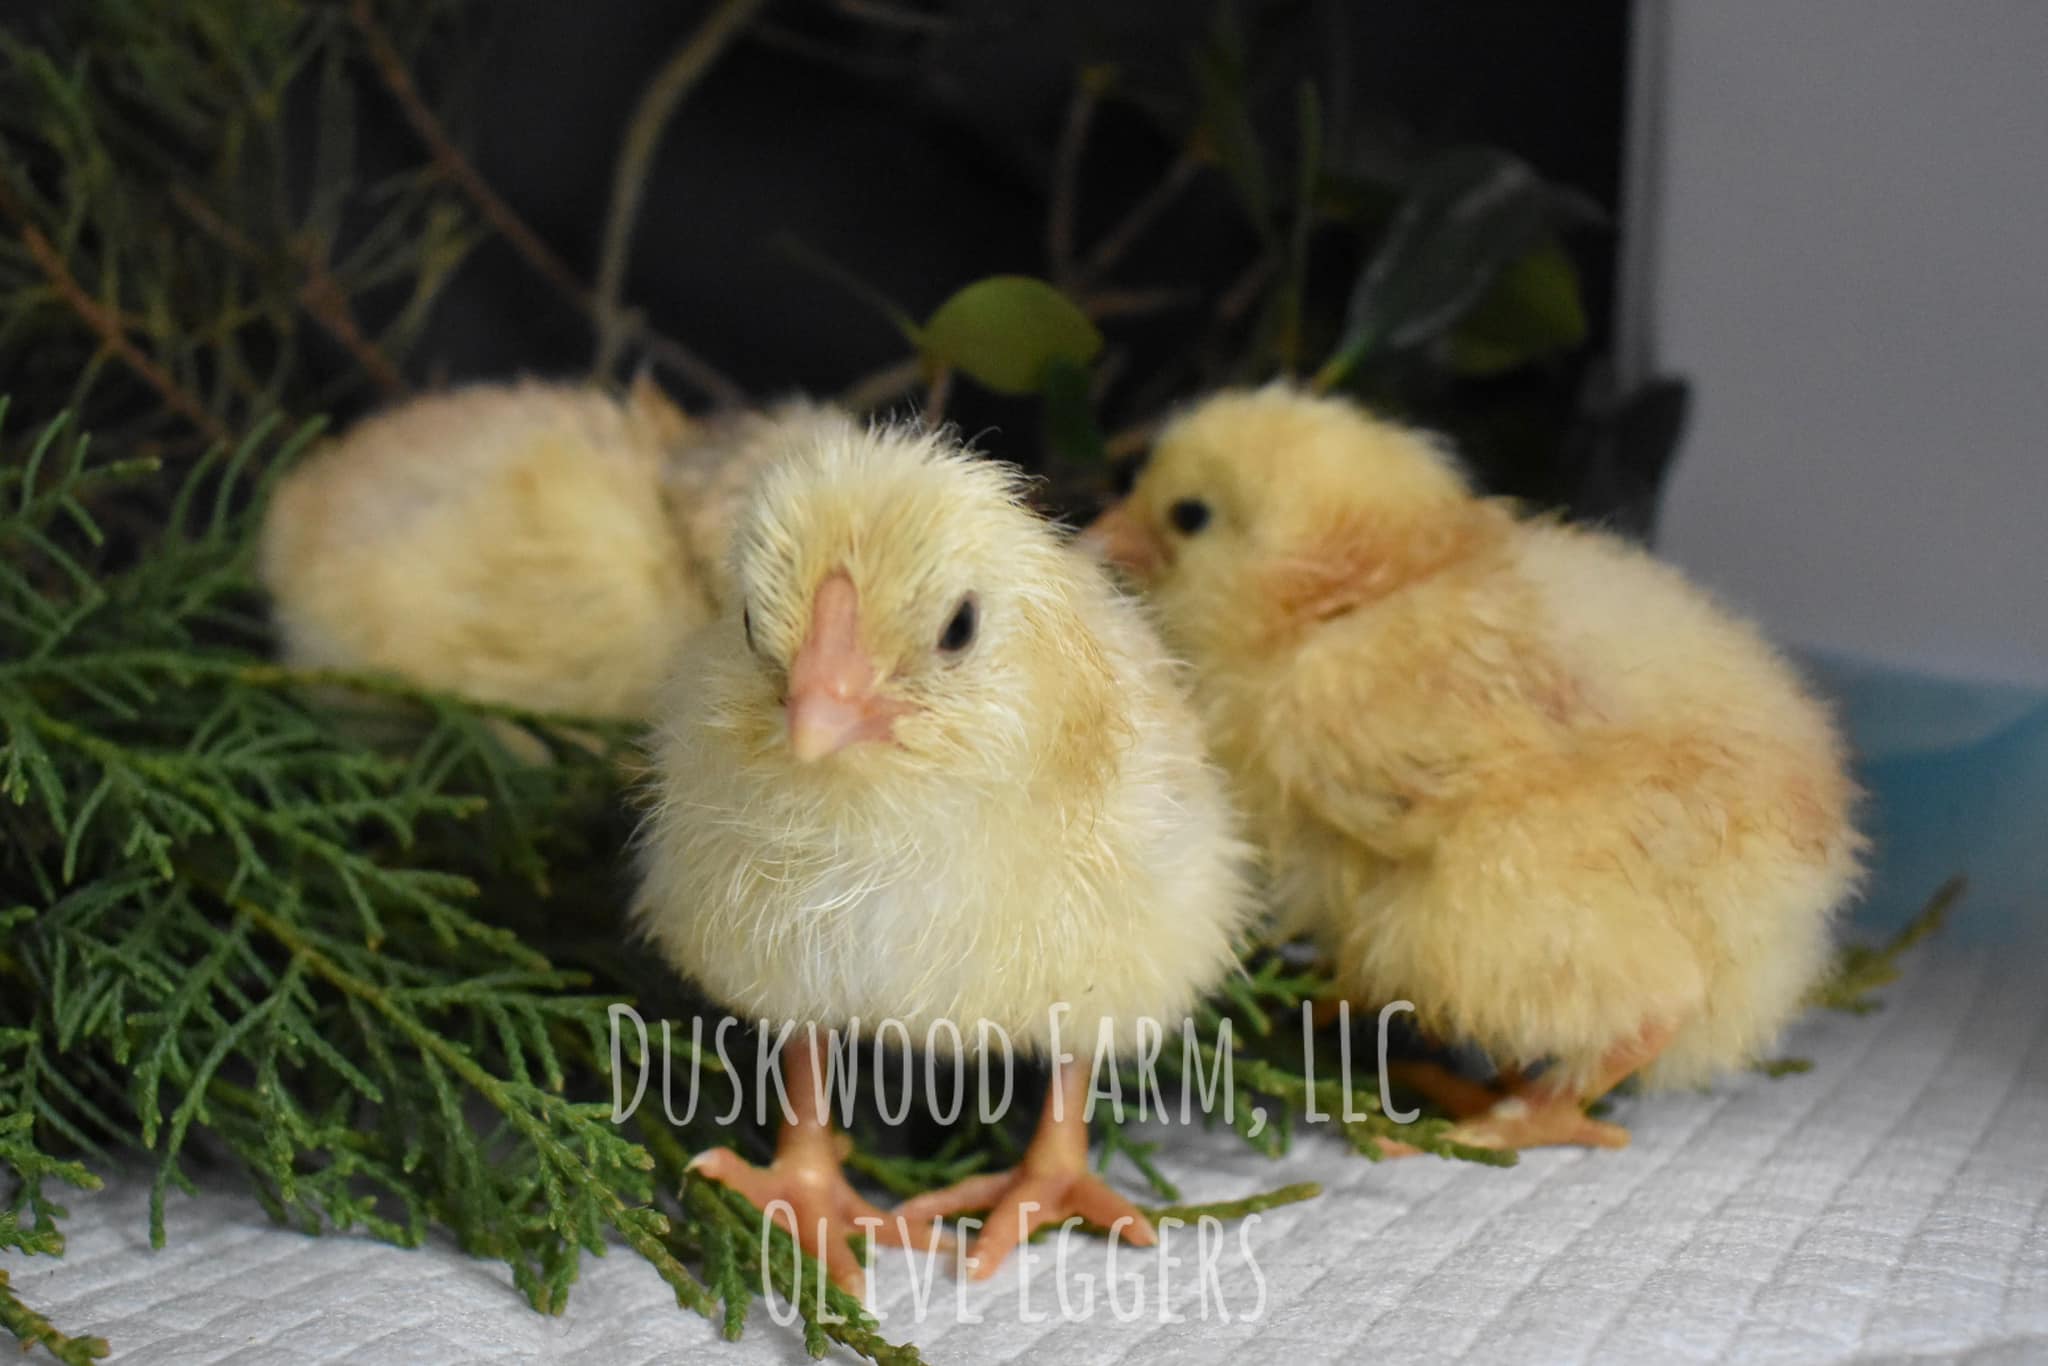 F1 Olive Egger Chicks